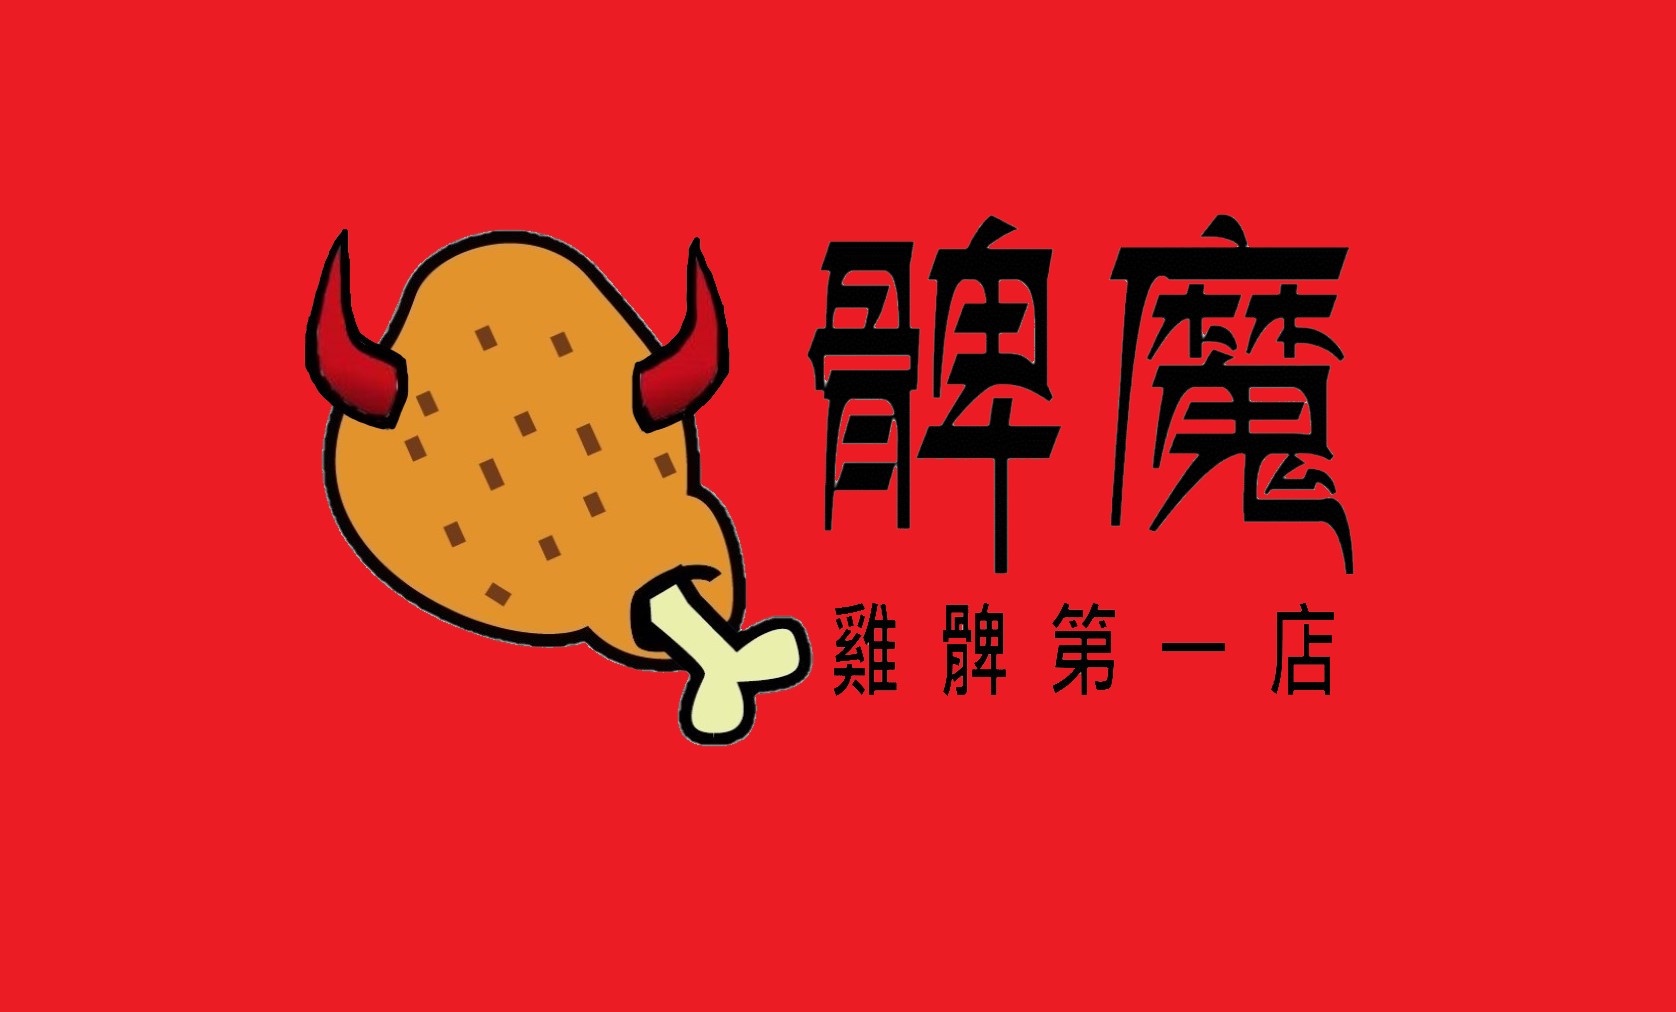 髀魔-雞髀第一店的特許經營香港區加盟店項目1